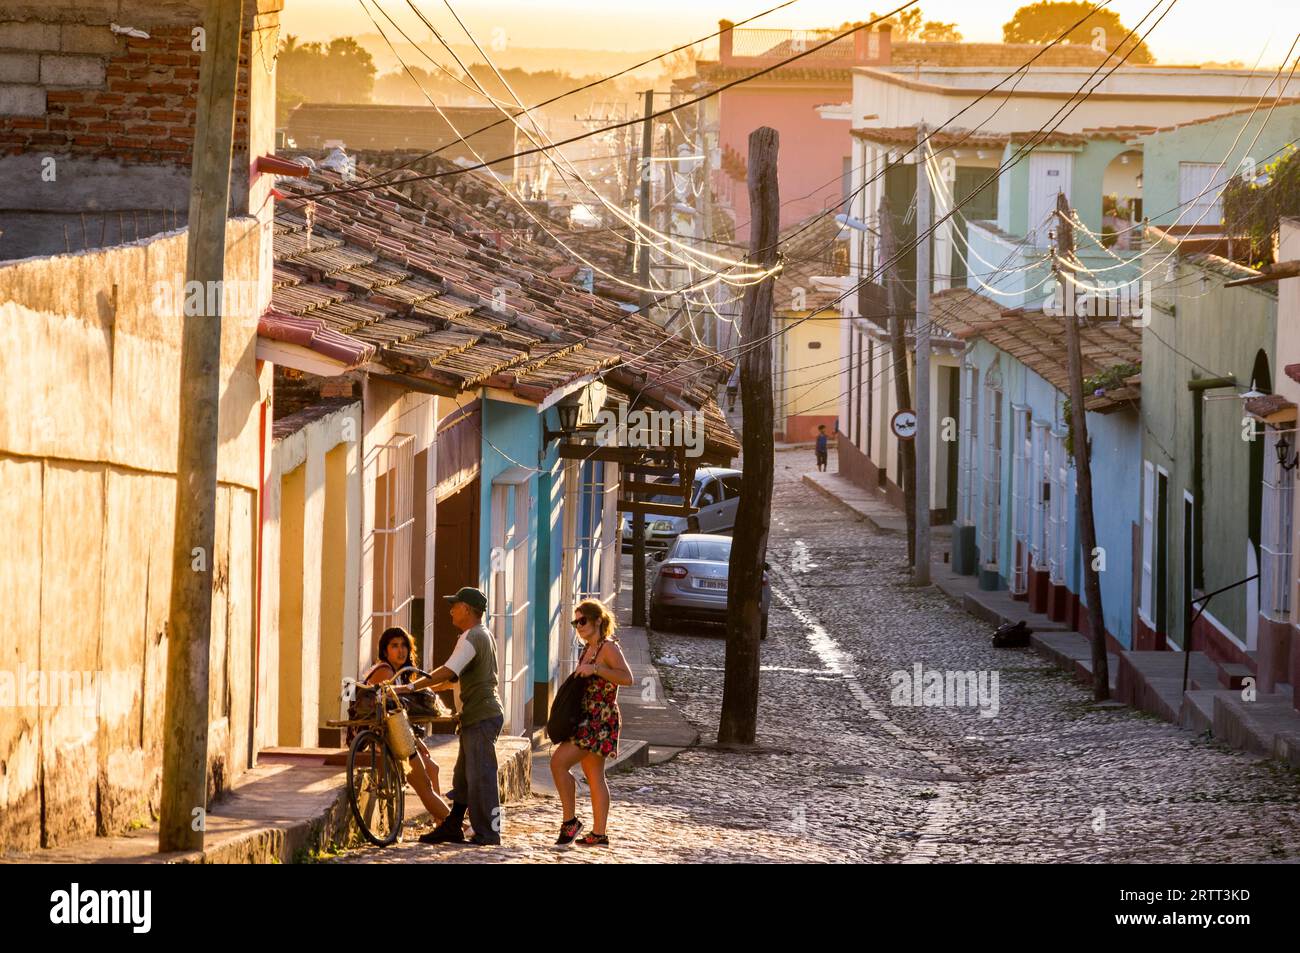 Trinidad, Cuba le 30 décembre 2015 : le centre-ville de Trinidad est bondé de touristes, mais alors que la place principale a quelques impressionnants coloniaux Banque D'Images